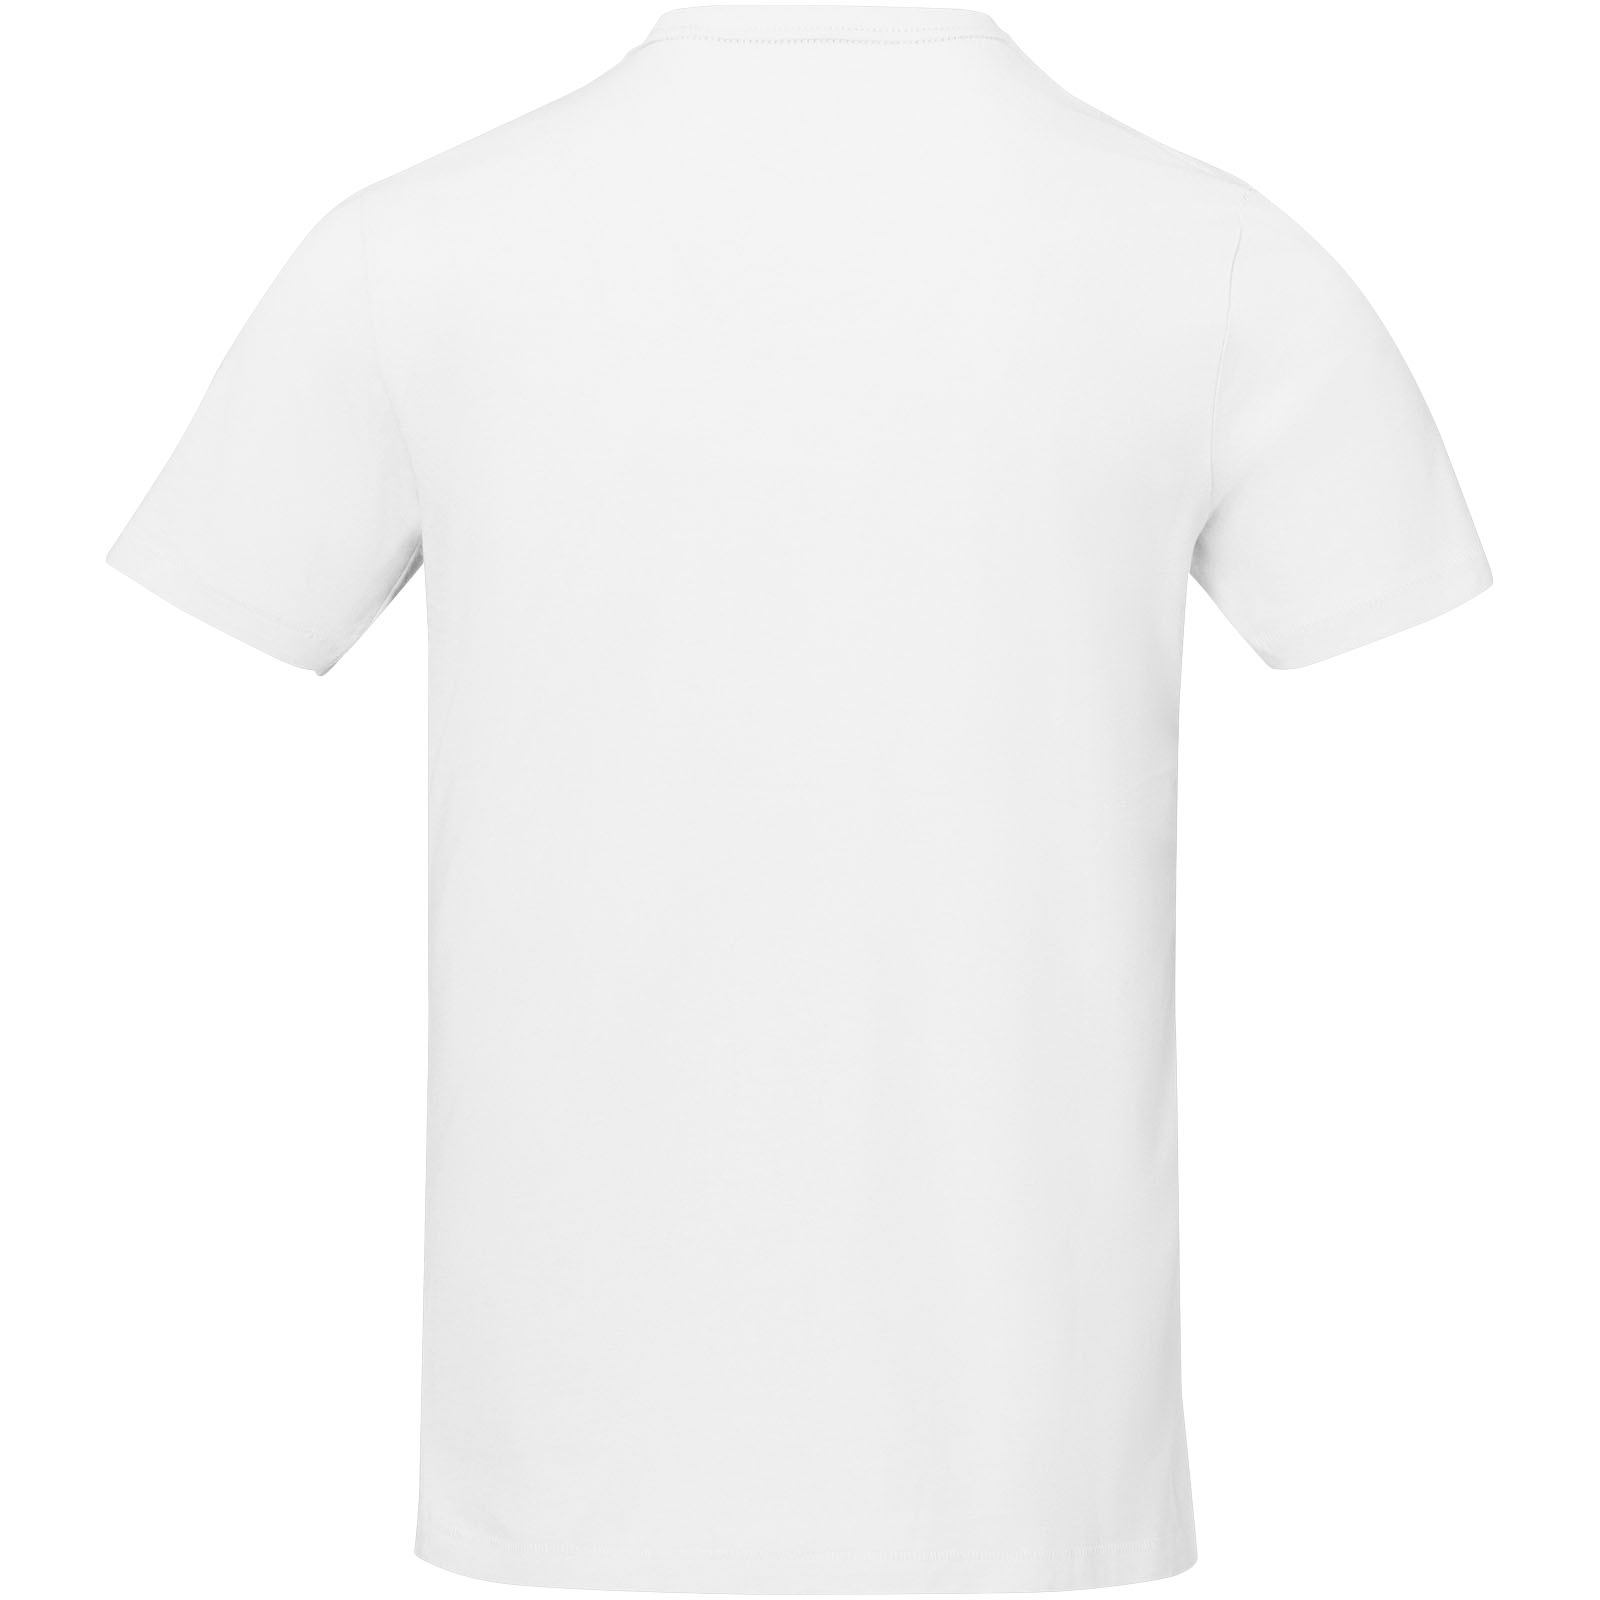 Advertising T-shirts - Nanaimo short sleeve men's t-shirt - 2